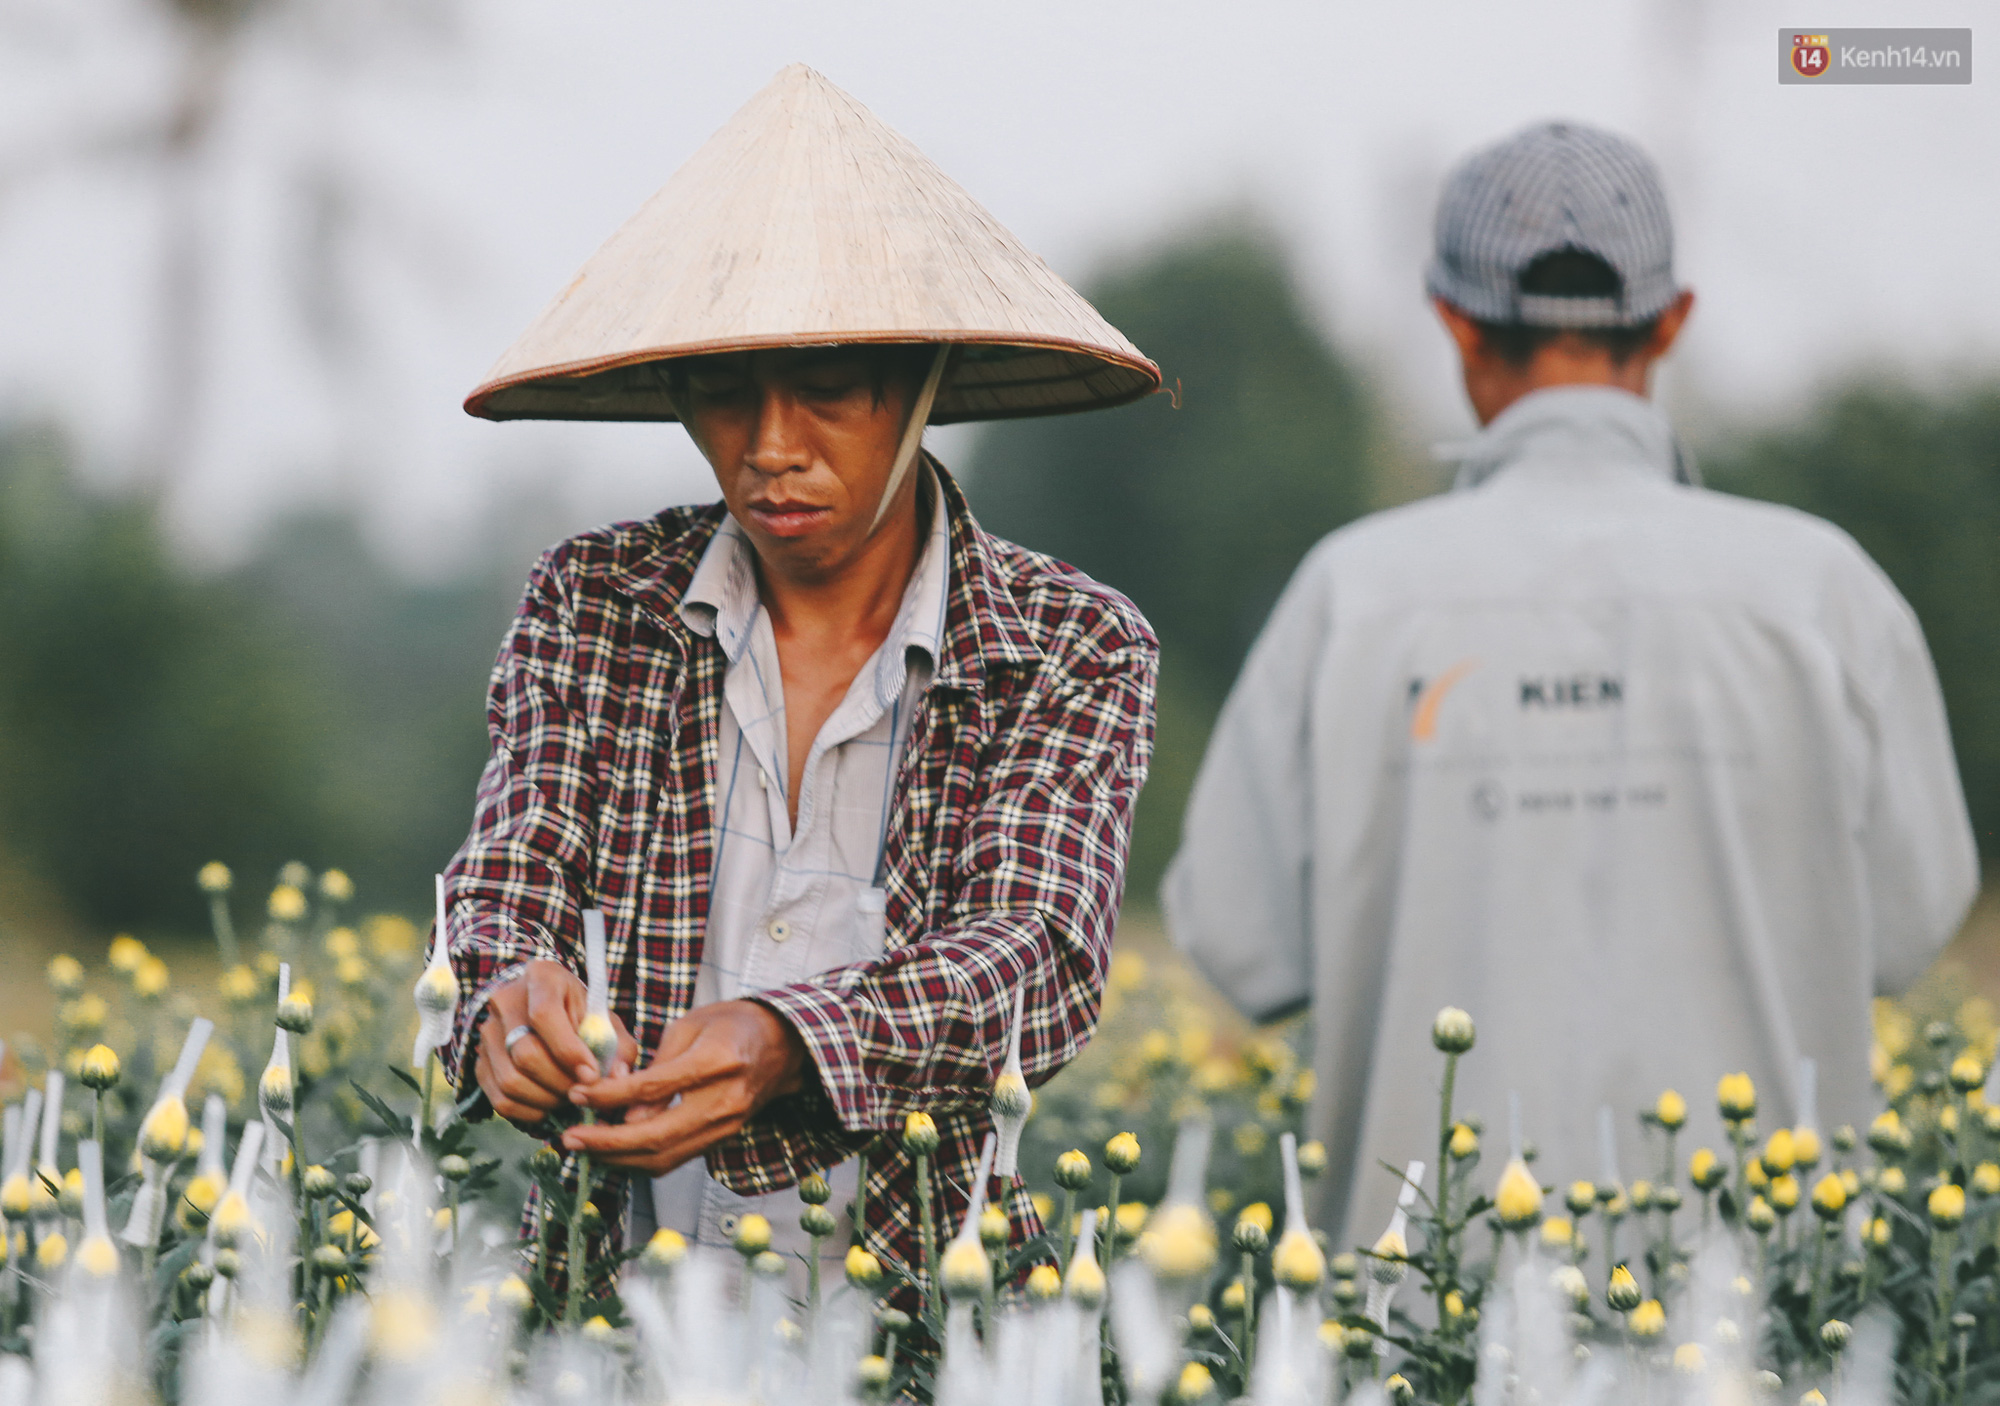 Cánh đồng hoa lớn nhất Sài Gòn khoe sắc rực rỡ, người nông dân cười tươi chuẩn bị xuống chợ hoa Xuân - Ảnh 12.